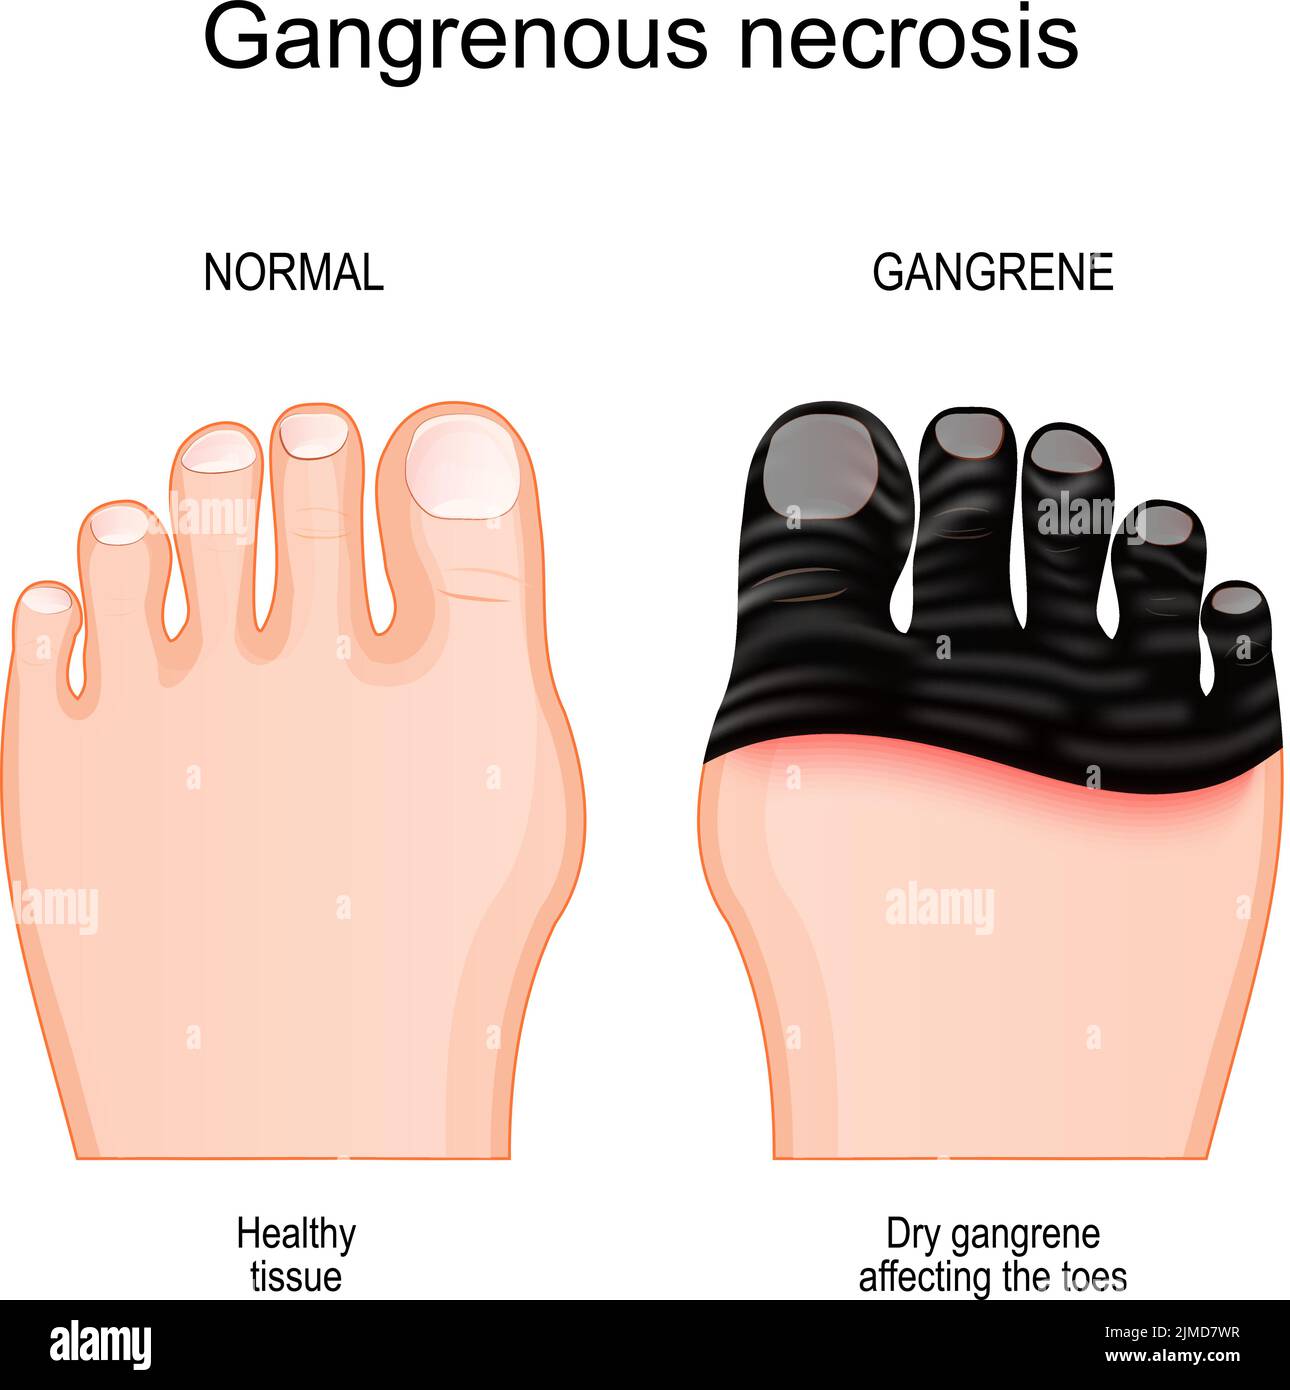 Gangrène. Comparaison et différence entre un pied sain et une jambe avec la mort tissulaire par nécrose gangréeuse. Gangrène sèche affectant les orteils. Vecteur Illustration de Vecteur